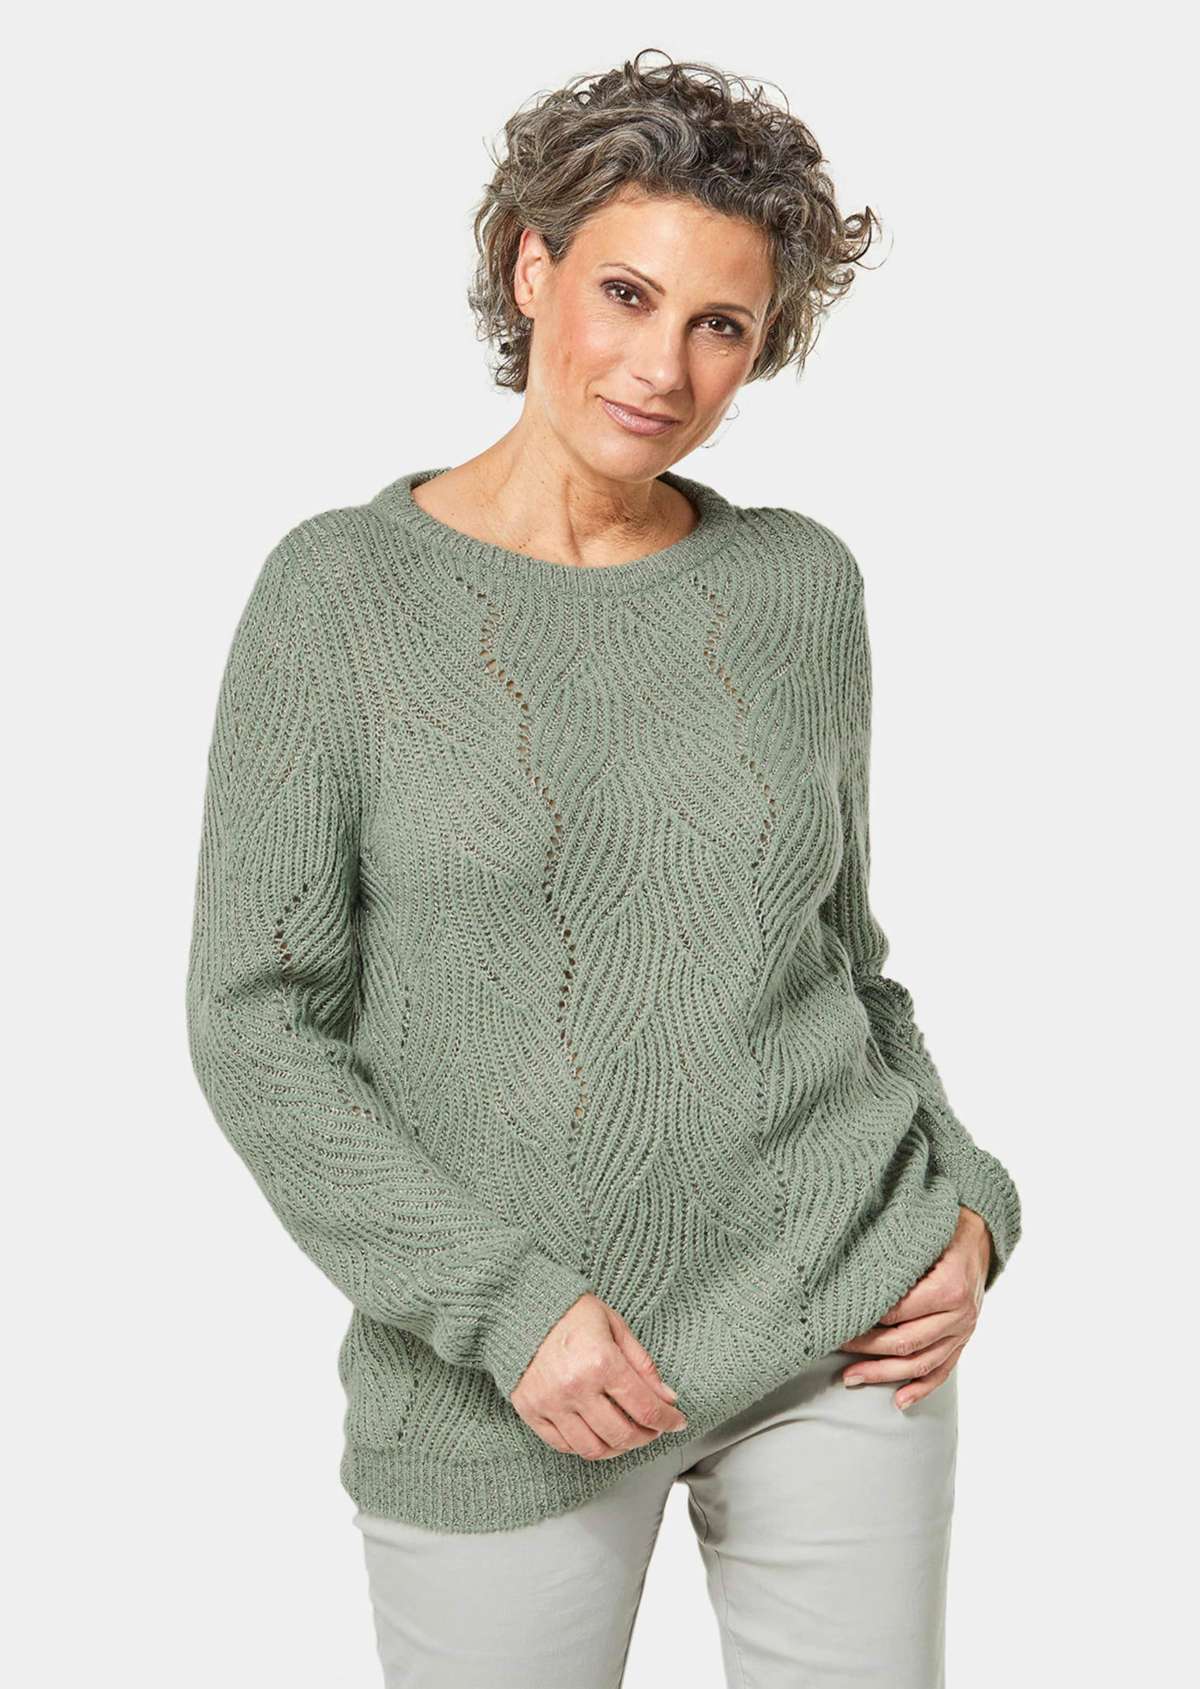 Пуловер с ребристым узором и деталями ажурной формы.